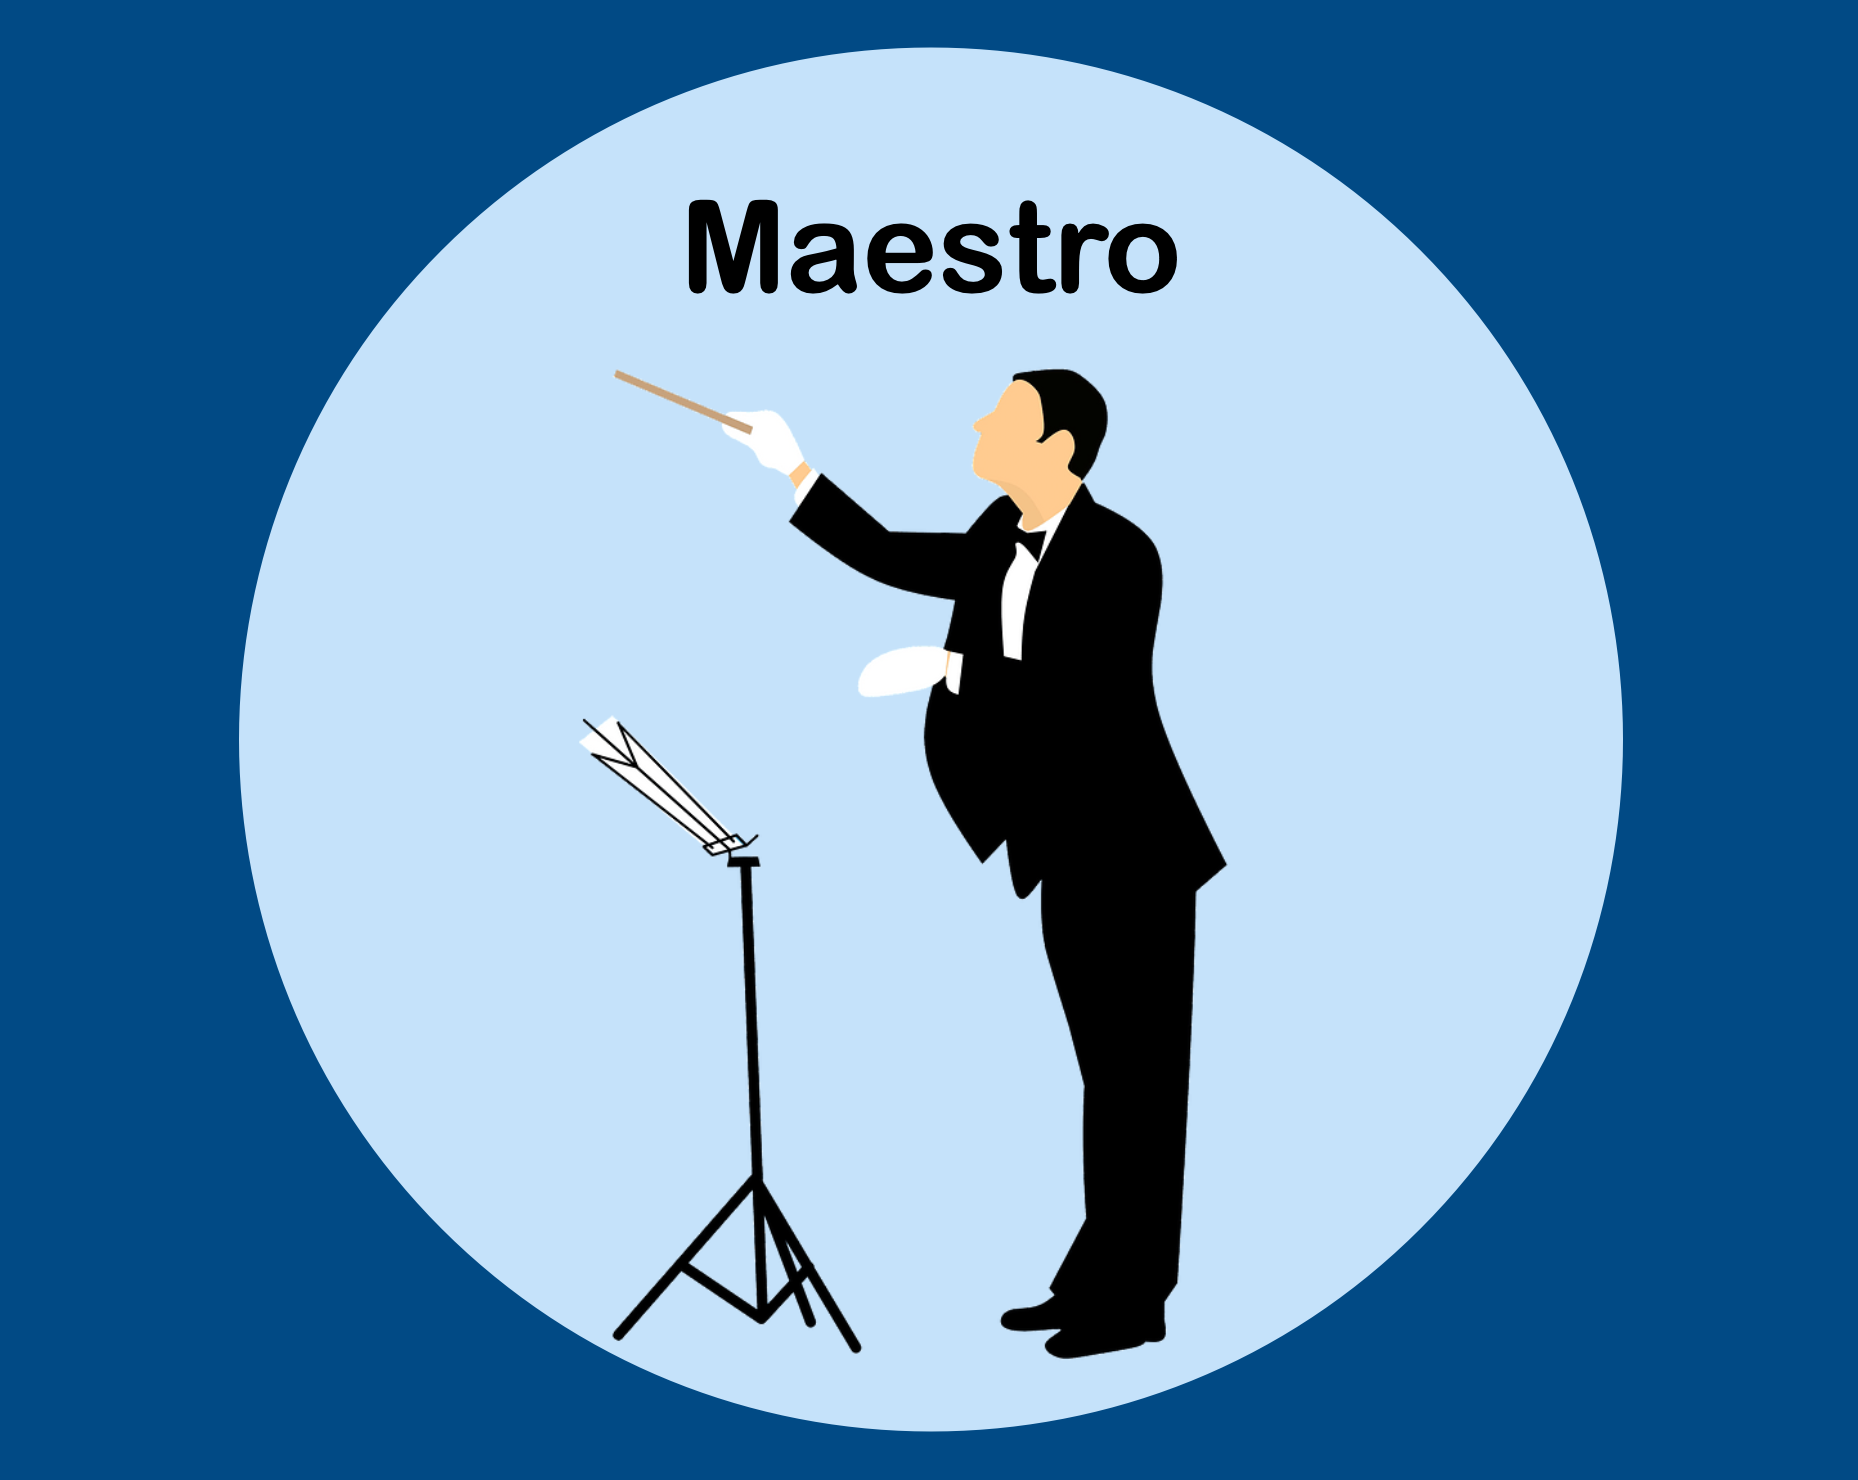  Maestro